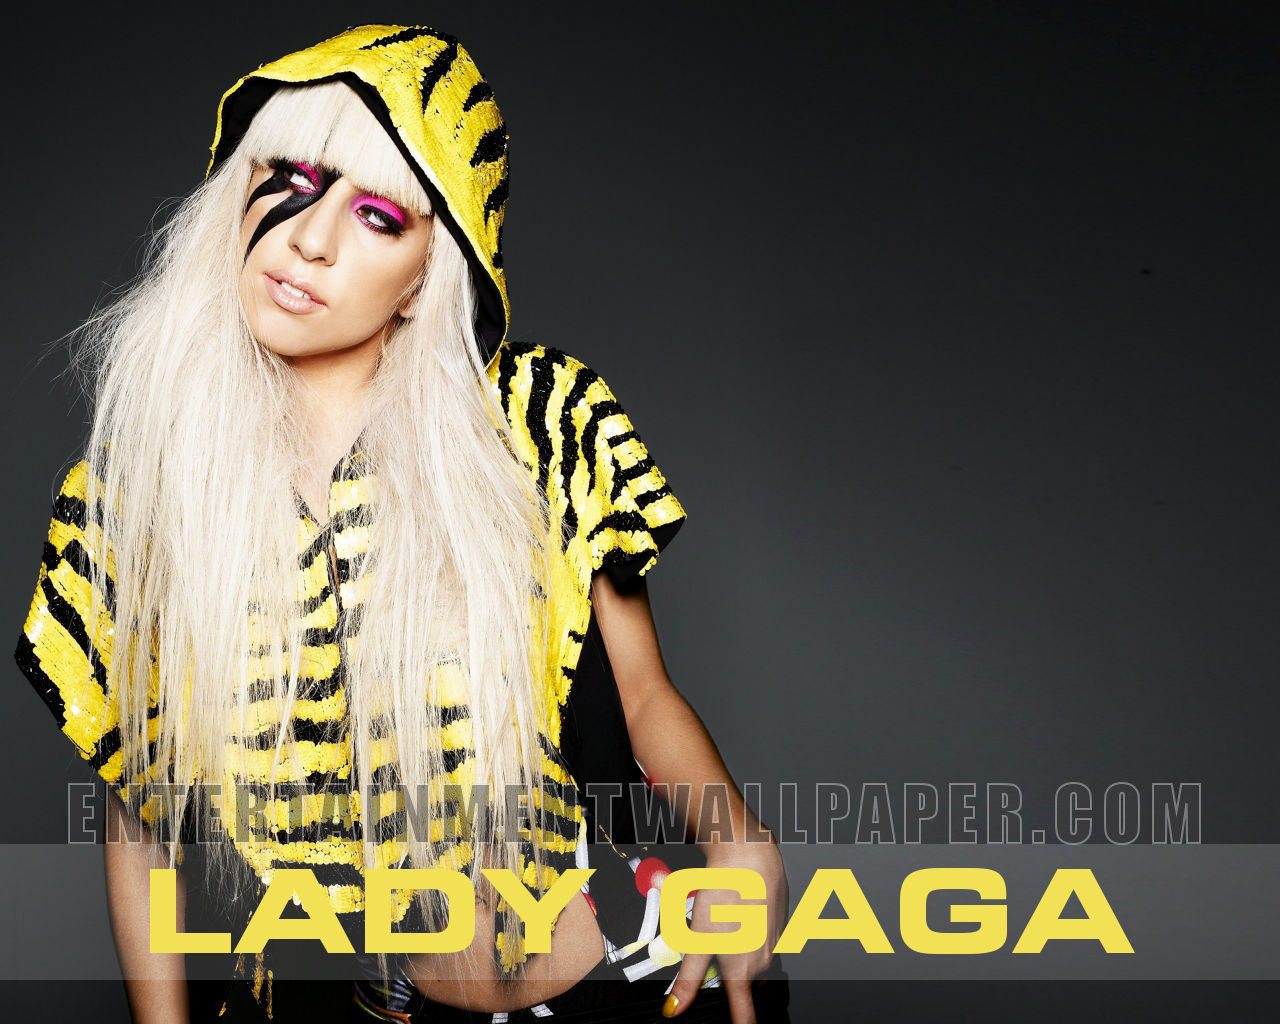 http://2.bp.blogspot.com/-6ioGDObnwIo/Tja2i4LW45I/AAAAAAAAAfo/0fXuWDrMwGc/s1600/Fashionable_Lady_Gaga_Wallpaper_2011_534665676.jpg